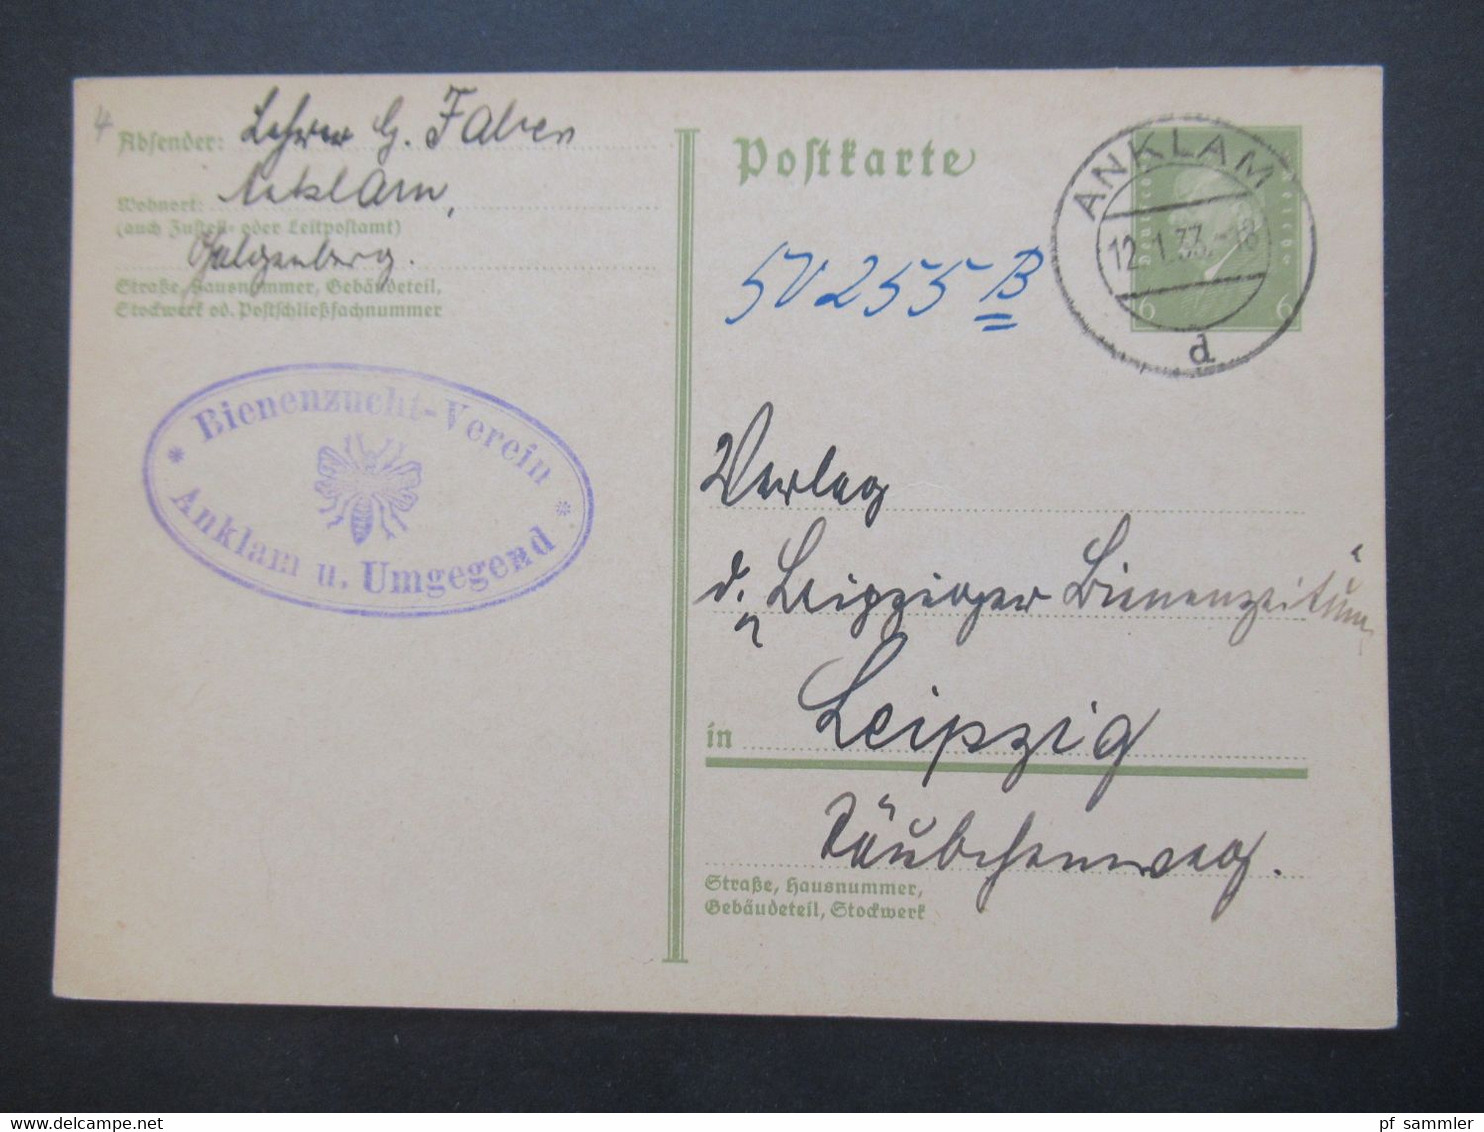 DR 1932 / 33 Pommern / Vorpommern OPD Stettin 40 Ganzsachen verschiedene Orte! Alle nach Leipzig an die Bienen Zeitung